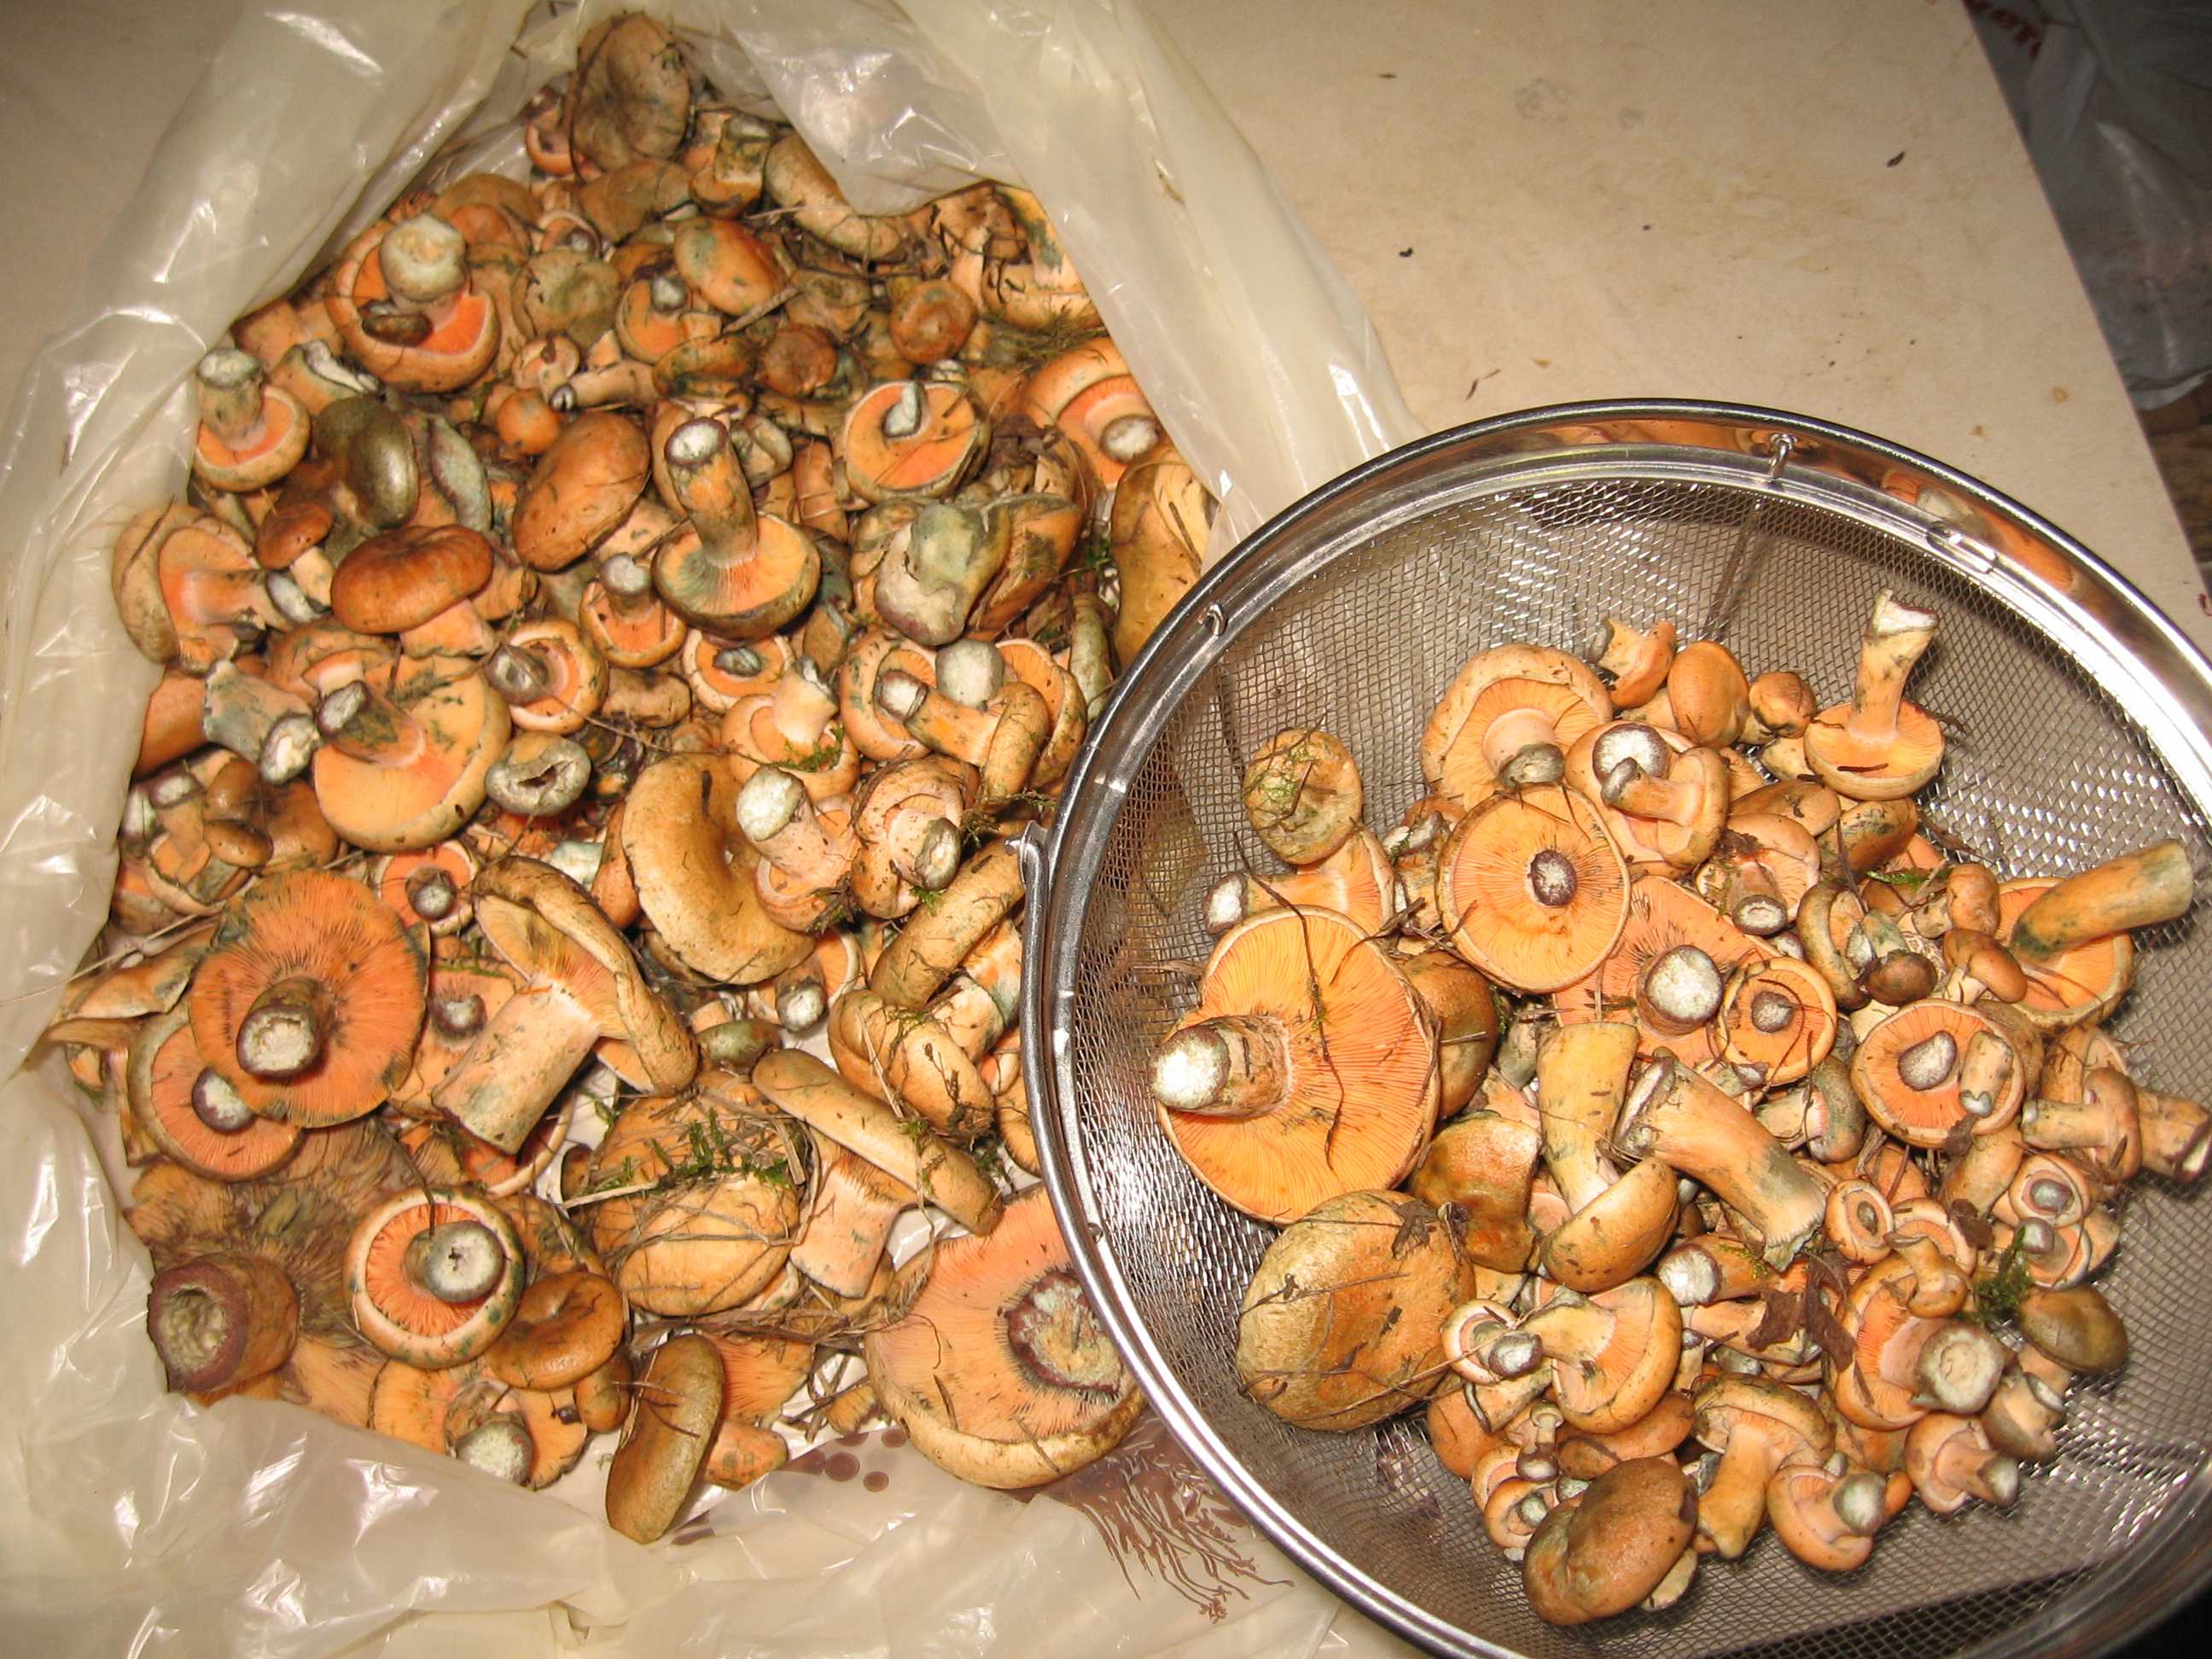 Приготовление грибов рыжиков в домашних условиях. как правильно засолить рыжики: горячая и холодная засолка